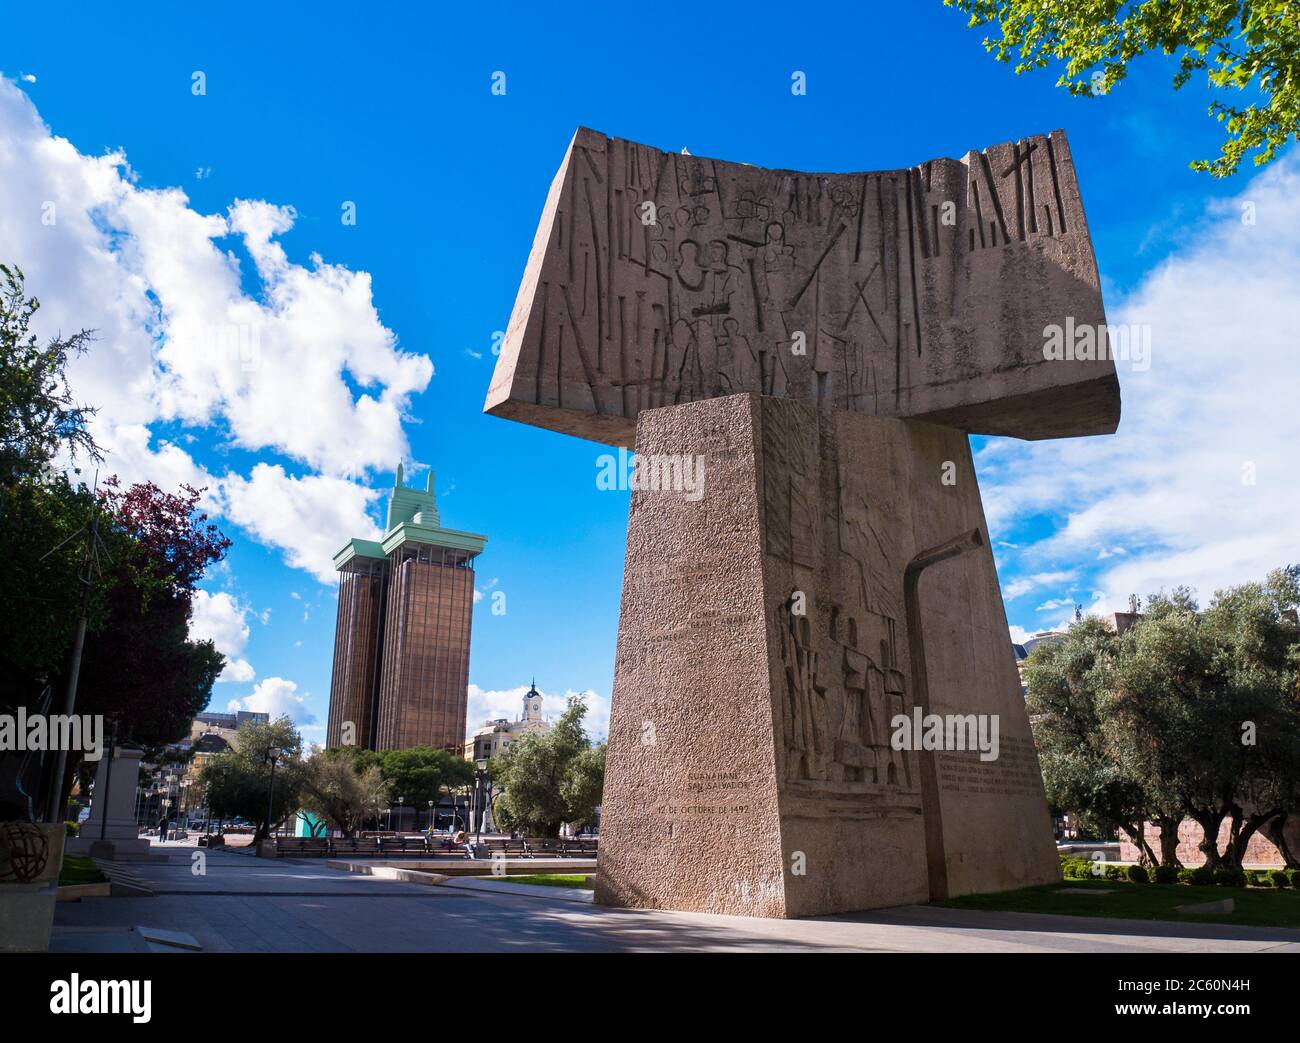 Monumento al descubrimiento de América. Jardines del descubrimiento. Madrid. España. Stockfoto